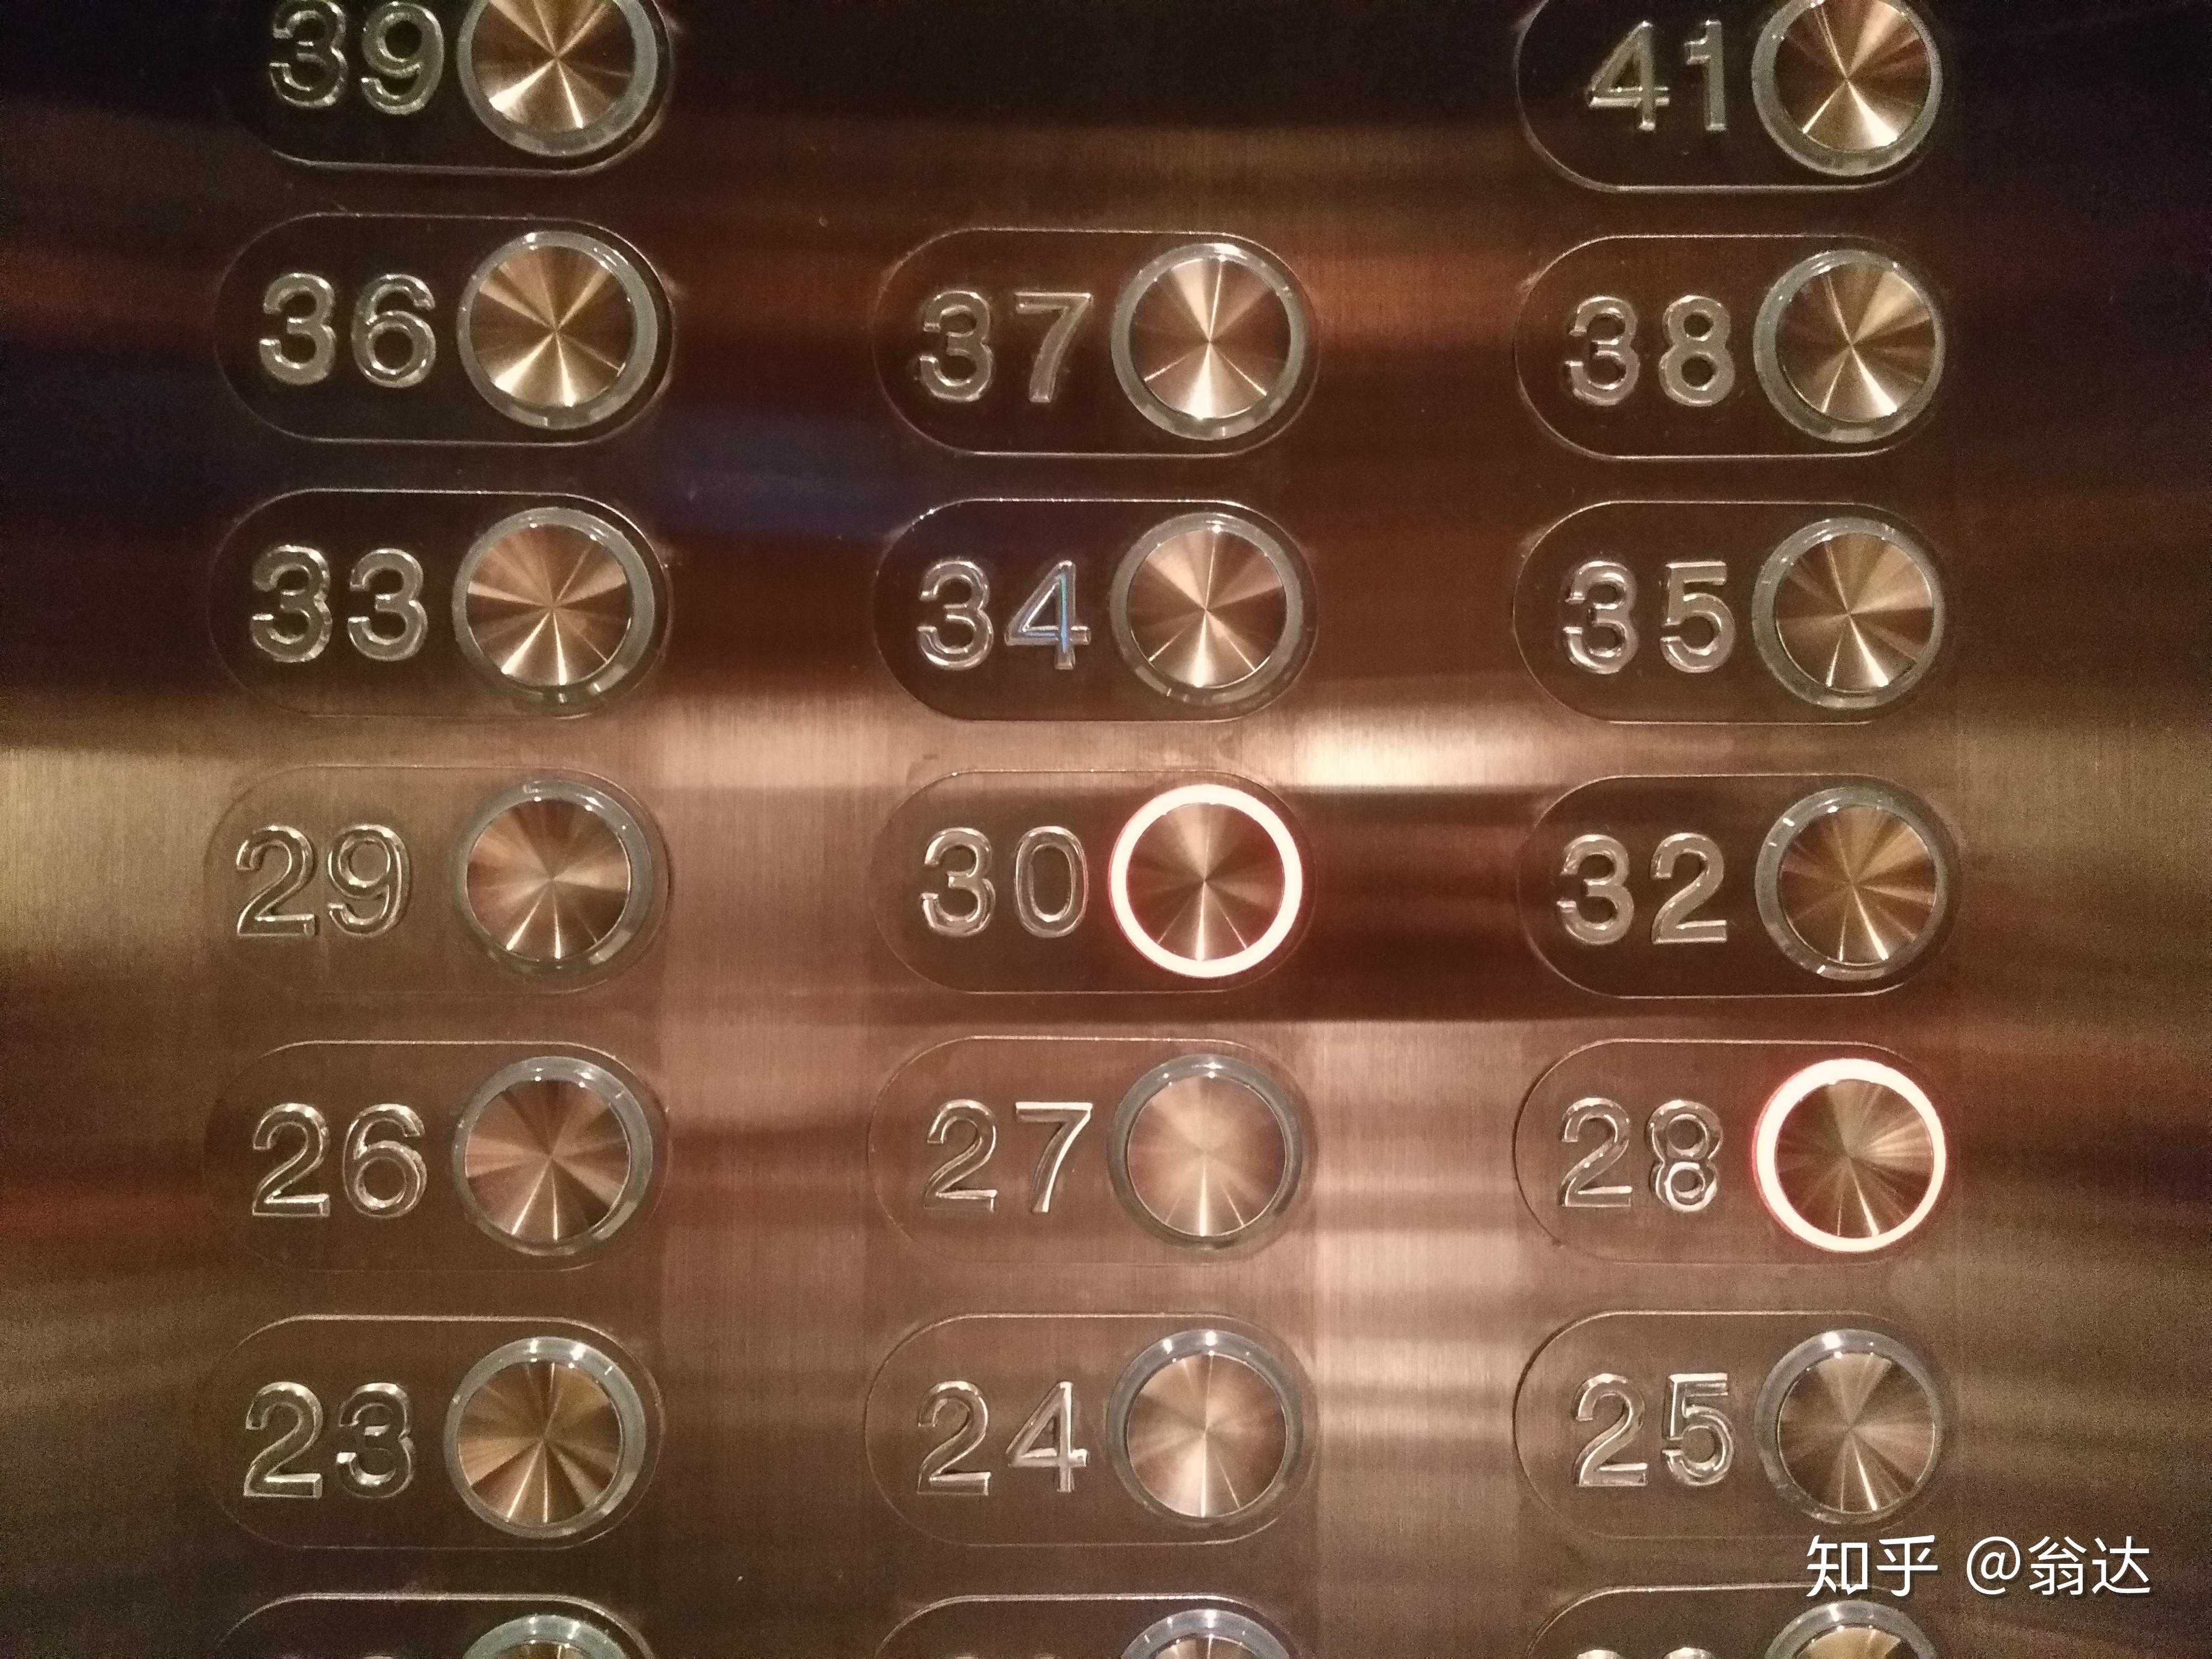 一直认为细节决定高端品牌成败,这电梯按键表盘看得我好难受啊.